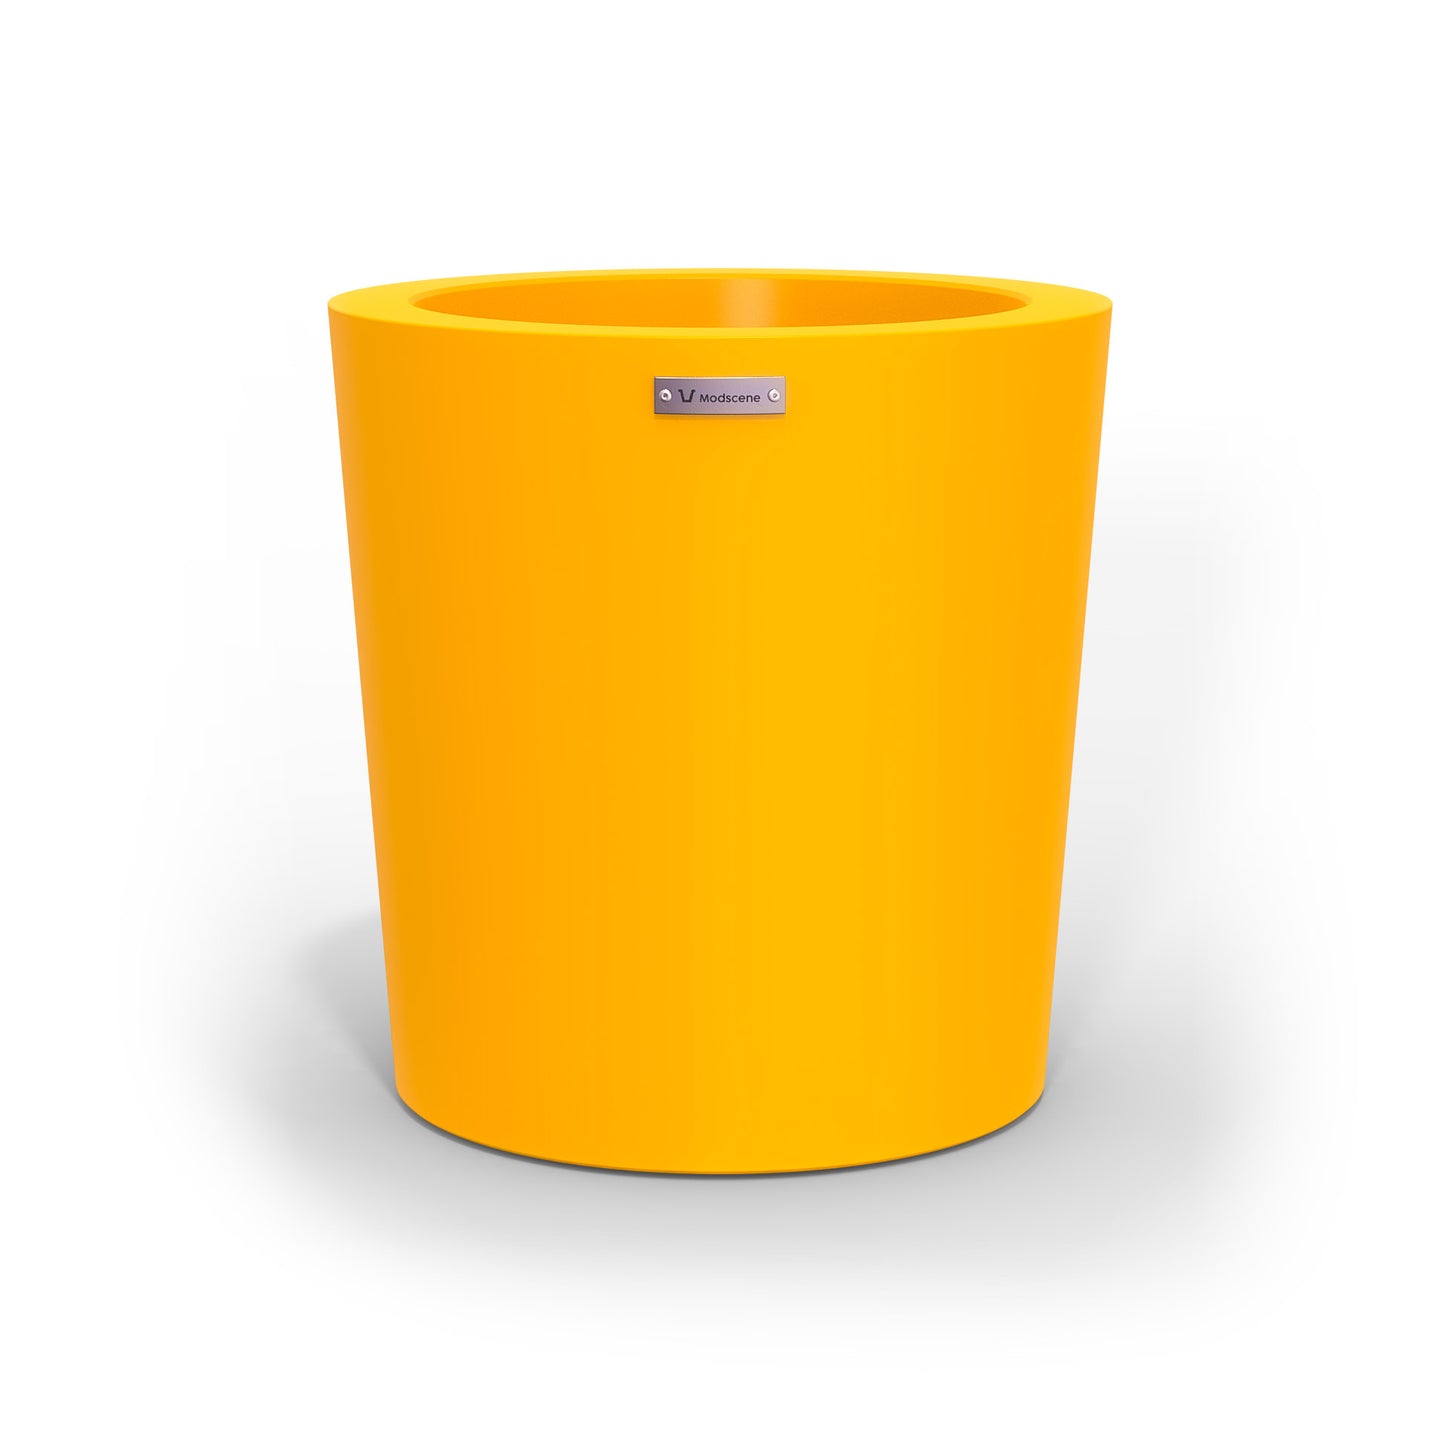 A modern designer planter pot in a yellow colour. 